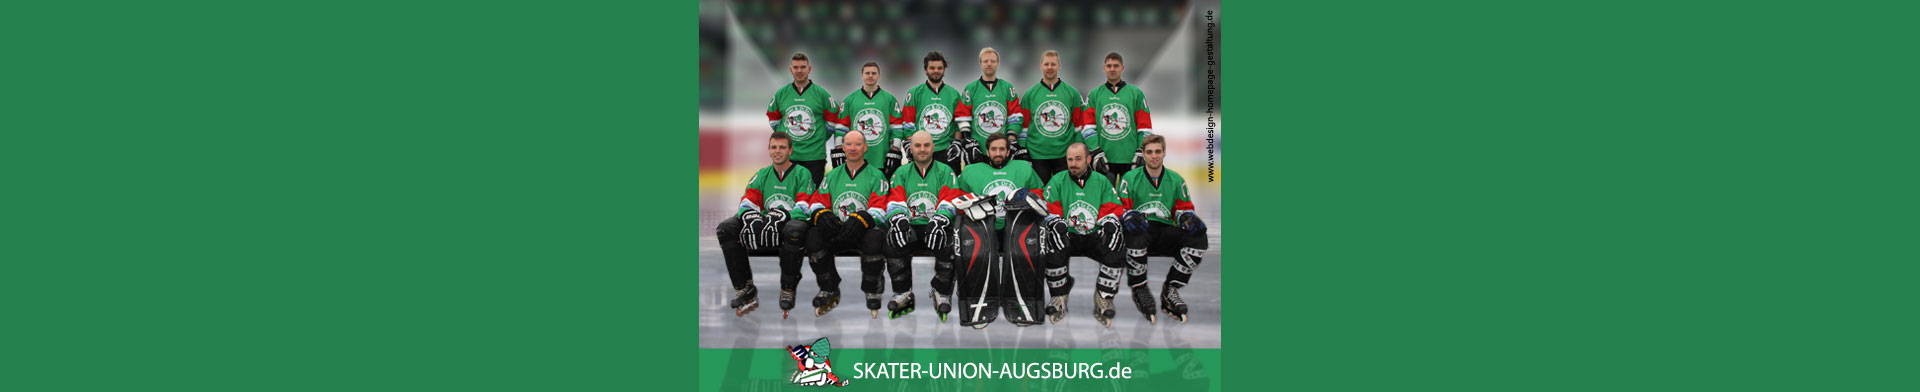 Mannschaft der Skater-Union-Augsburg